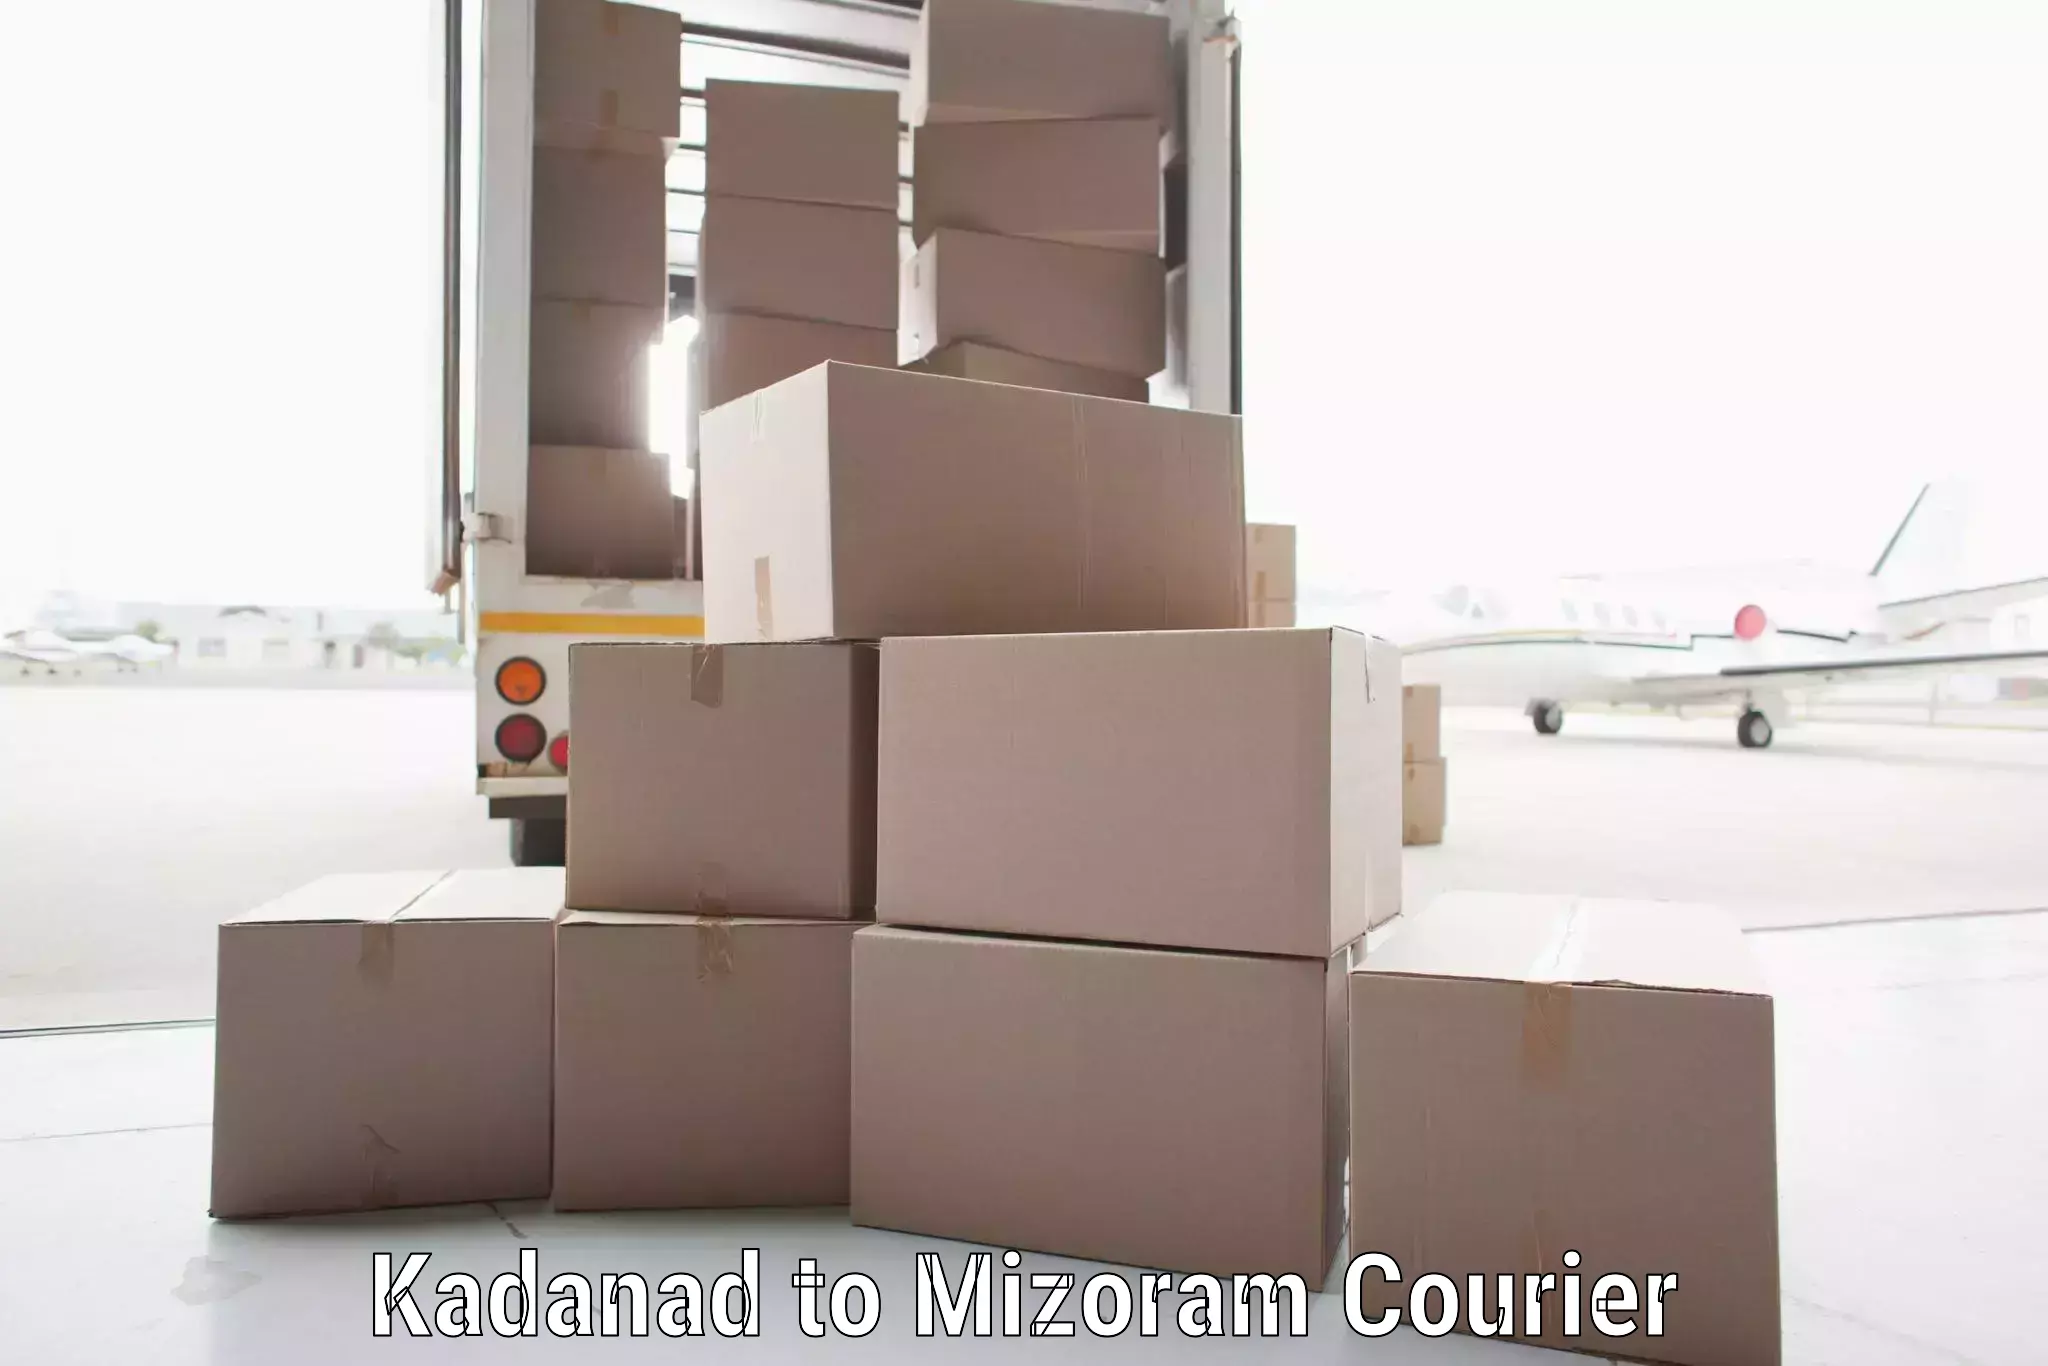 Express logistics in Kadanad to Thenzawl